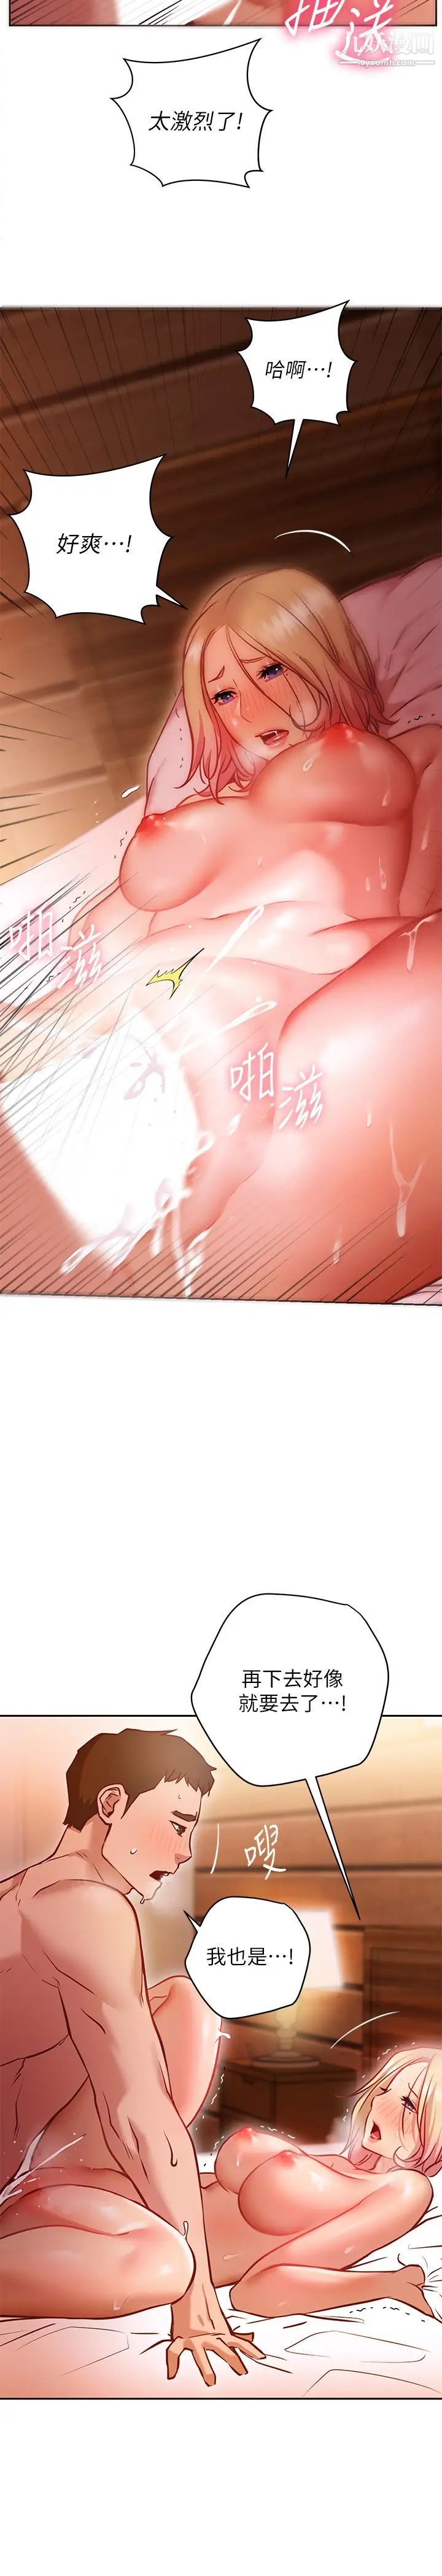 第10話 - 因高潮全身抖動的美娜5.jpg